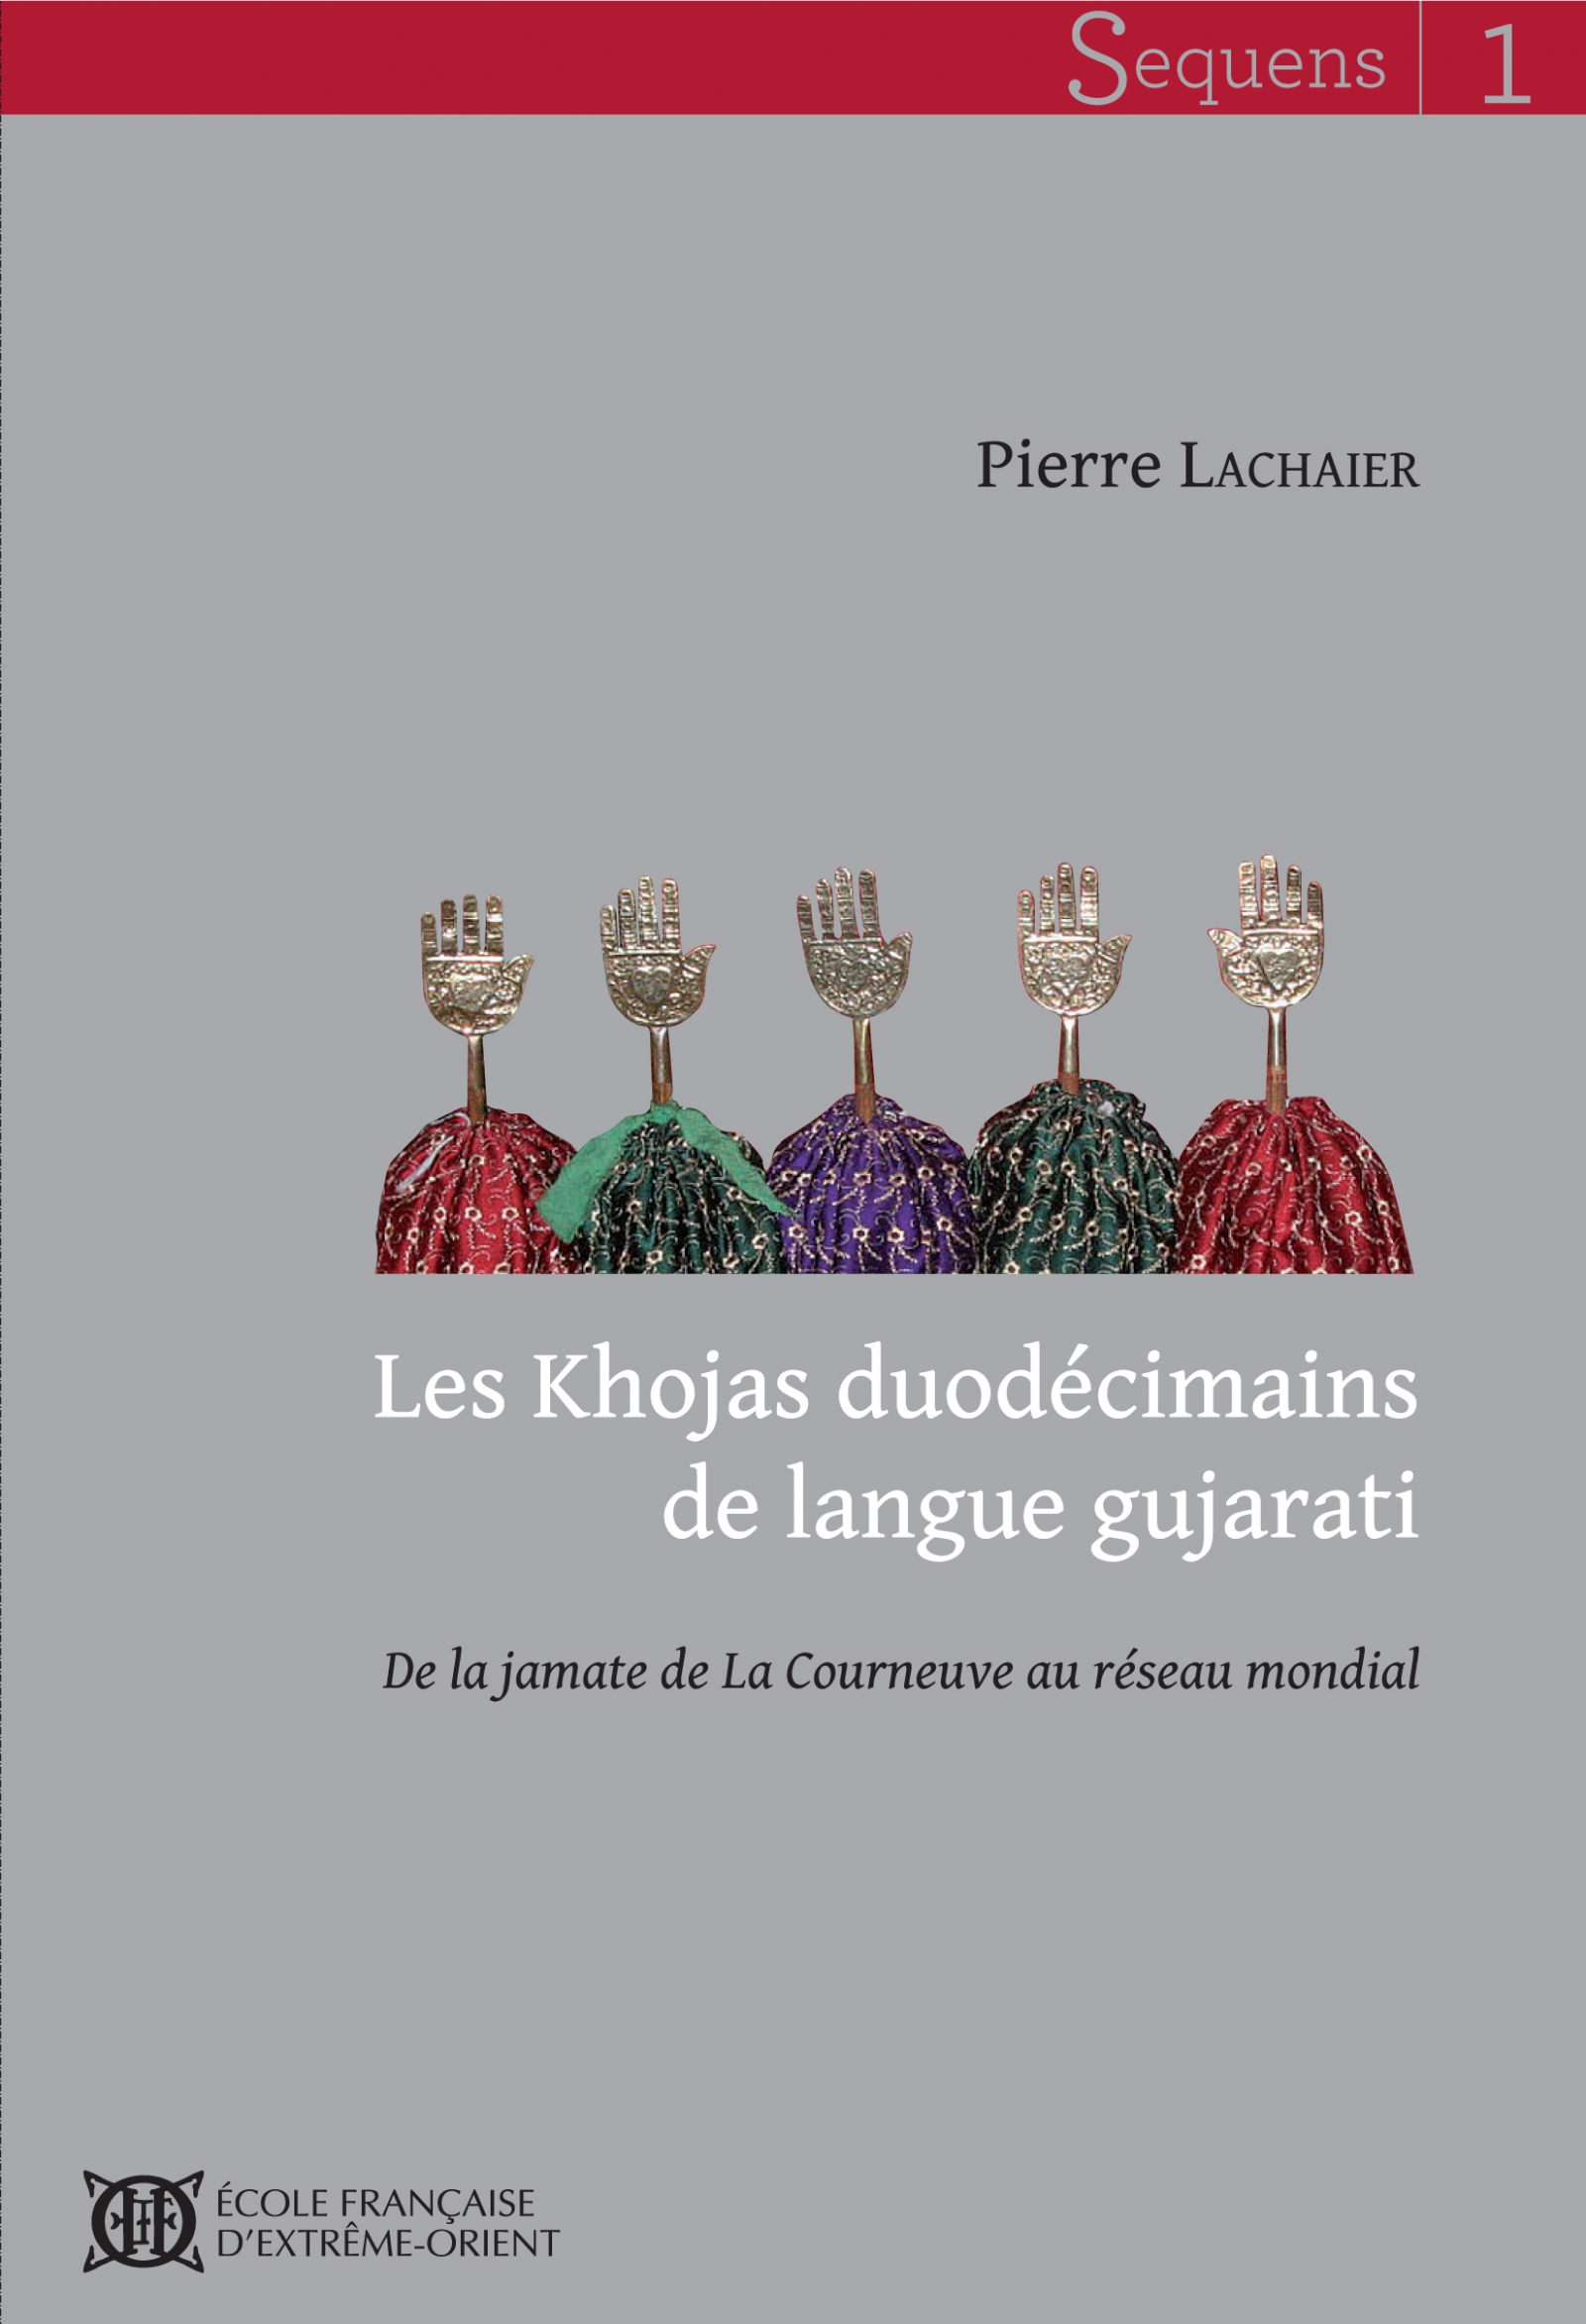 Les Khojas duodécimains de langue gujarati